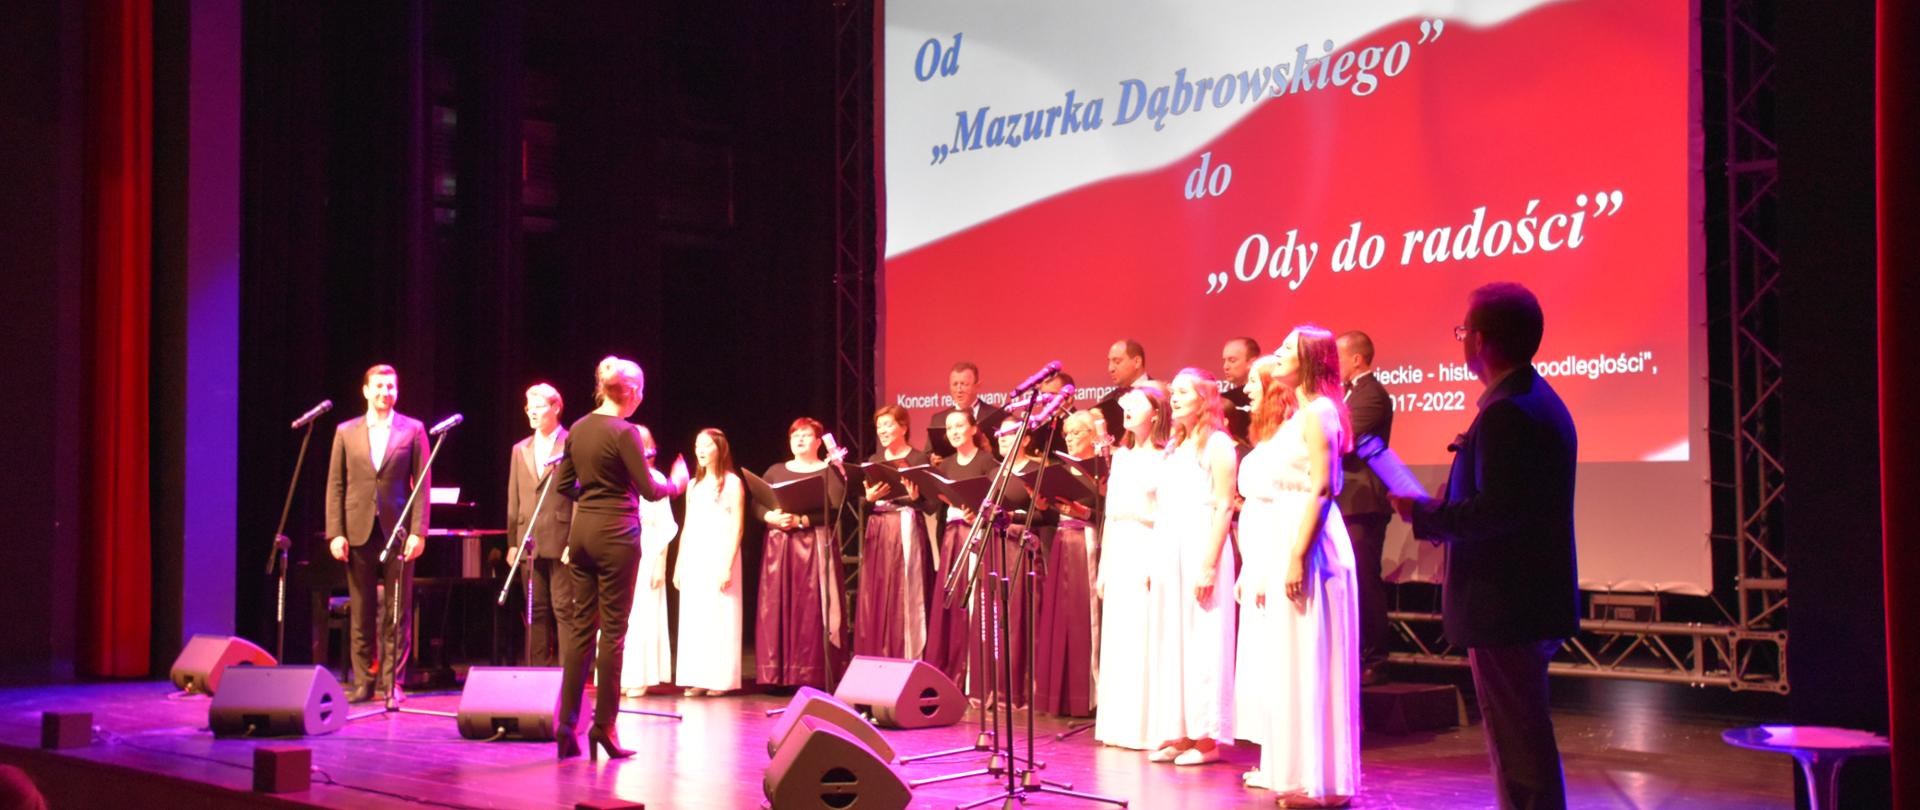 Artyści w trakcie koncertu Od "Mazurka Dąbrowskiego" do "Ody do radości"